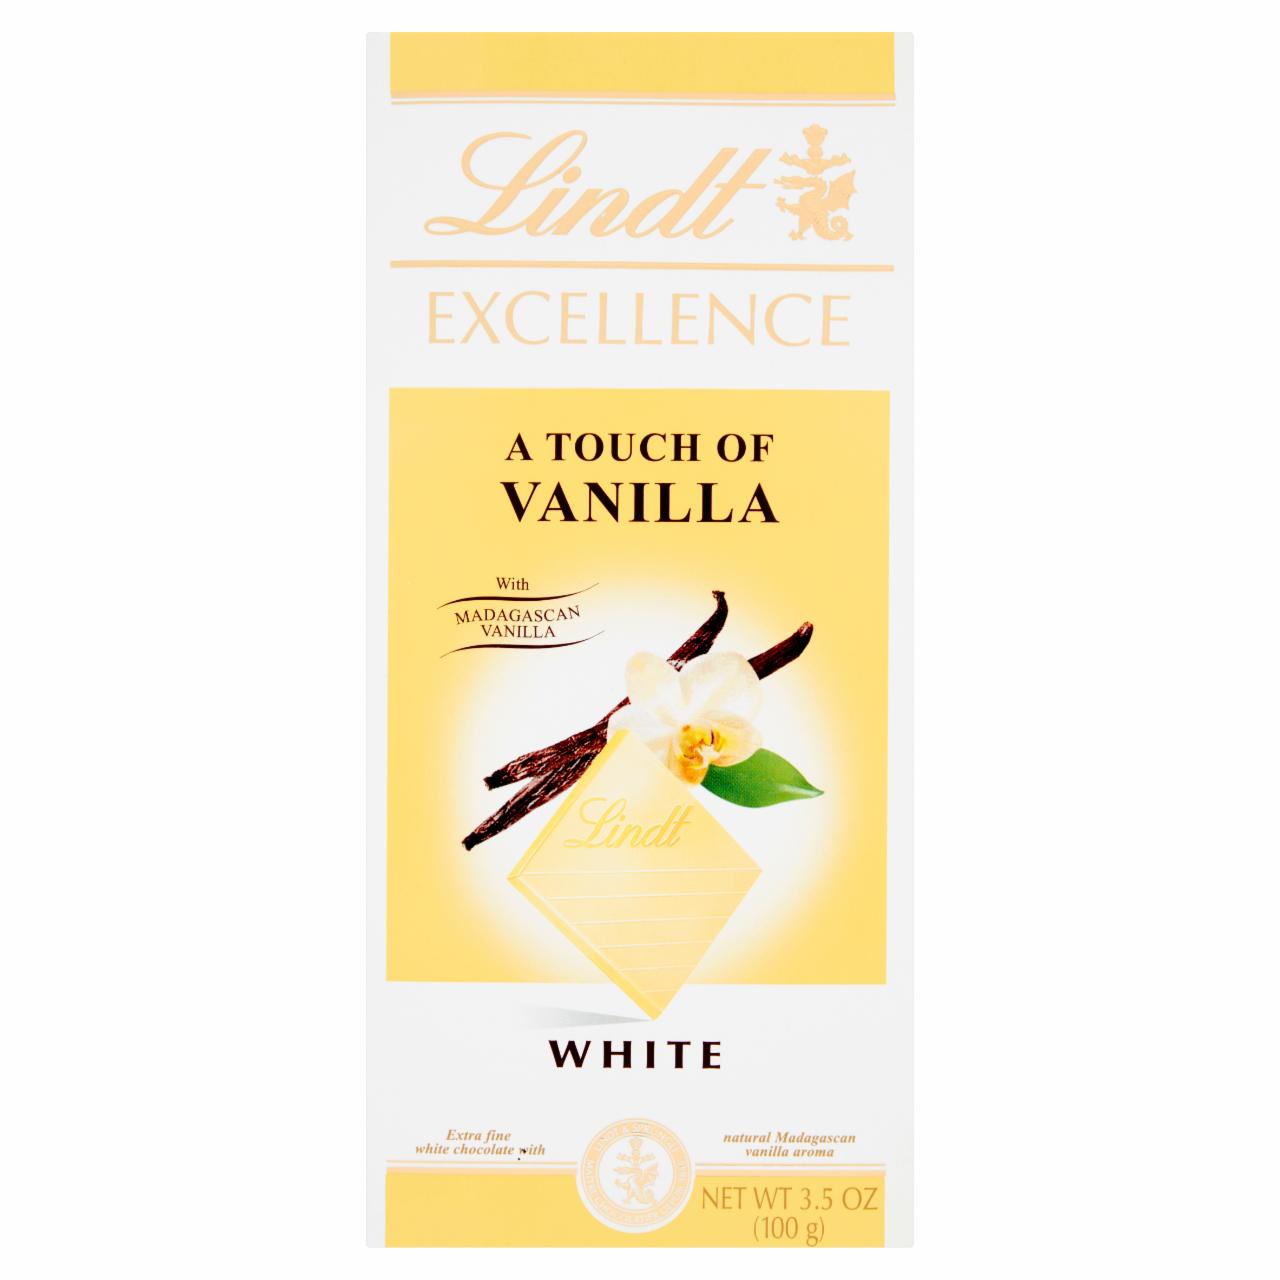 Zdjęcia - Lindt Excellence Wyśmienita czekolada biała z naturalnym aromatem wanilii 100 g